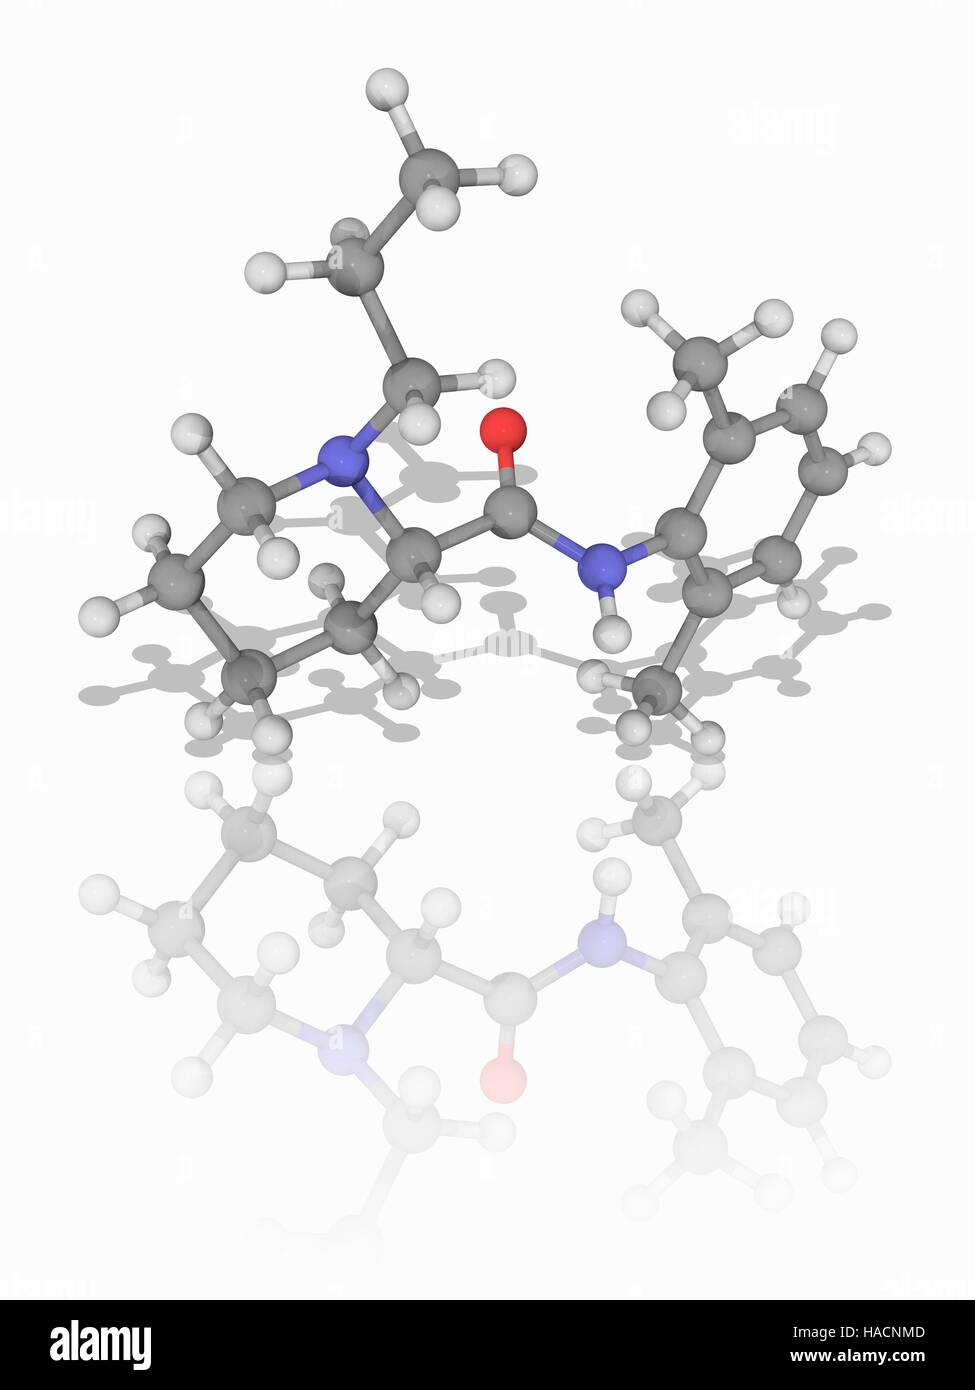 Ropivacain. Molekülmodell des lokalen betäubenden Medikaments (C17. H26. N2. (O), als Naropin vermarktet. Chemisch gesehen ist es ein Piperidin und ein Anilide. Atome als Kugeln dargestellt werden und sind farblich gekennzeichnet: Kohlenstoff (grau), Wasserstoff (weiß), Stickstoff (blau) und Sauerstoff (rot). Abbildung. Stockfoto